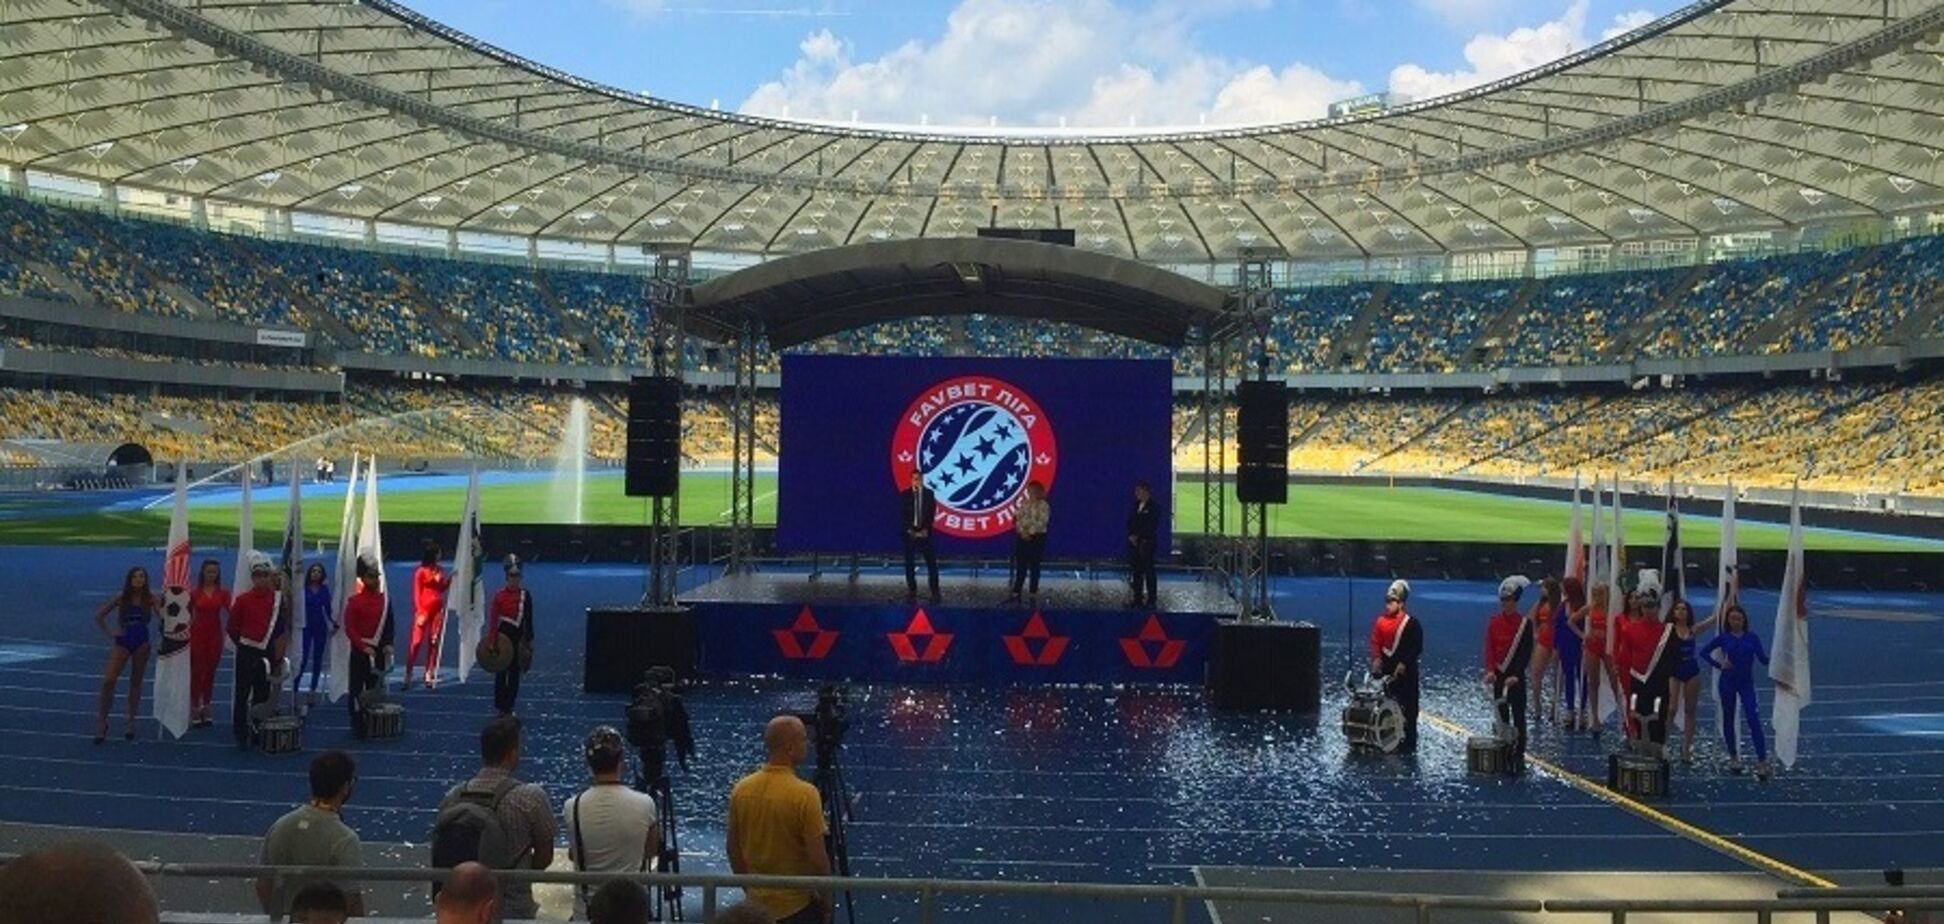 Прем'єр-ліга України змінила назву і логотип